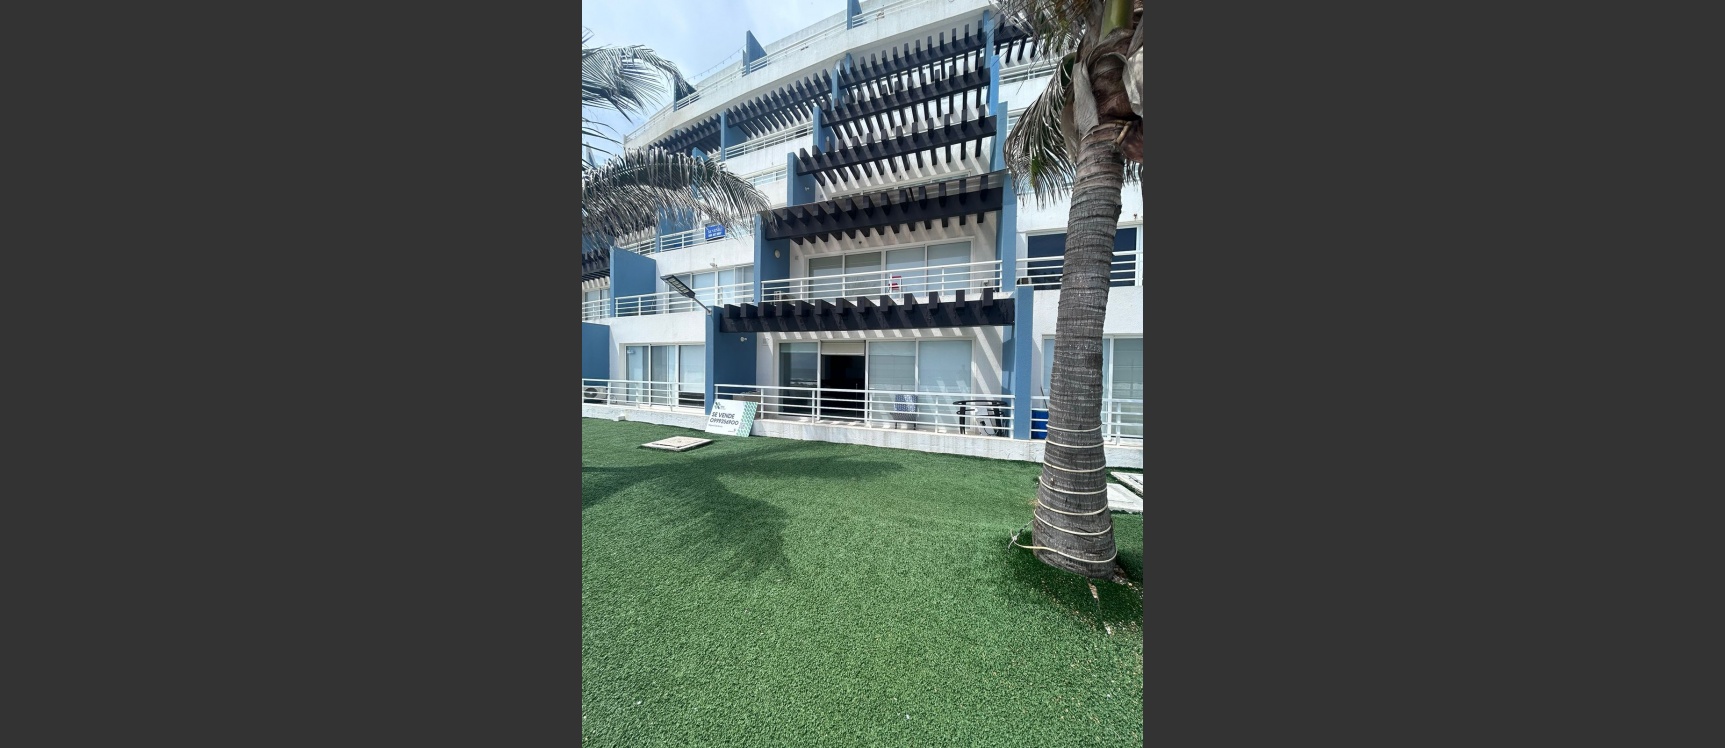 GeoBienes - Suite con vista increíble al mar en venta ubicada en Ocean Suite, General Villamil, Playas - Plusvalia Guayaquil Casas de venta y alquiler Inmobiliaria Ecuador